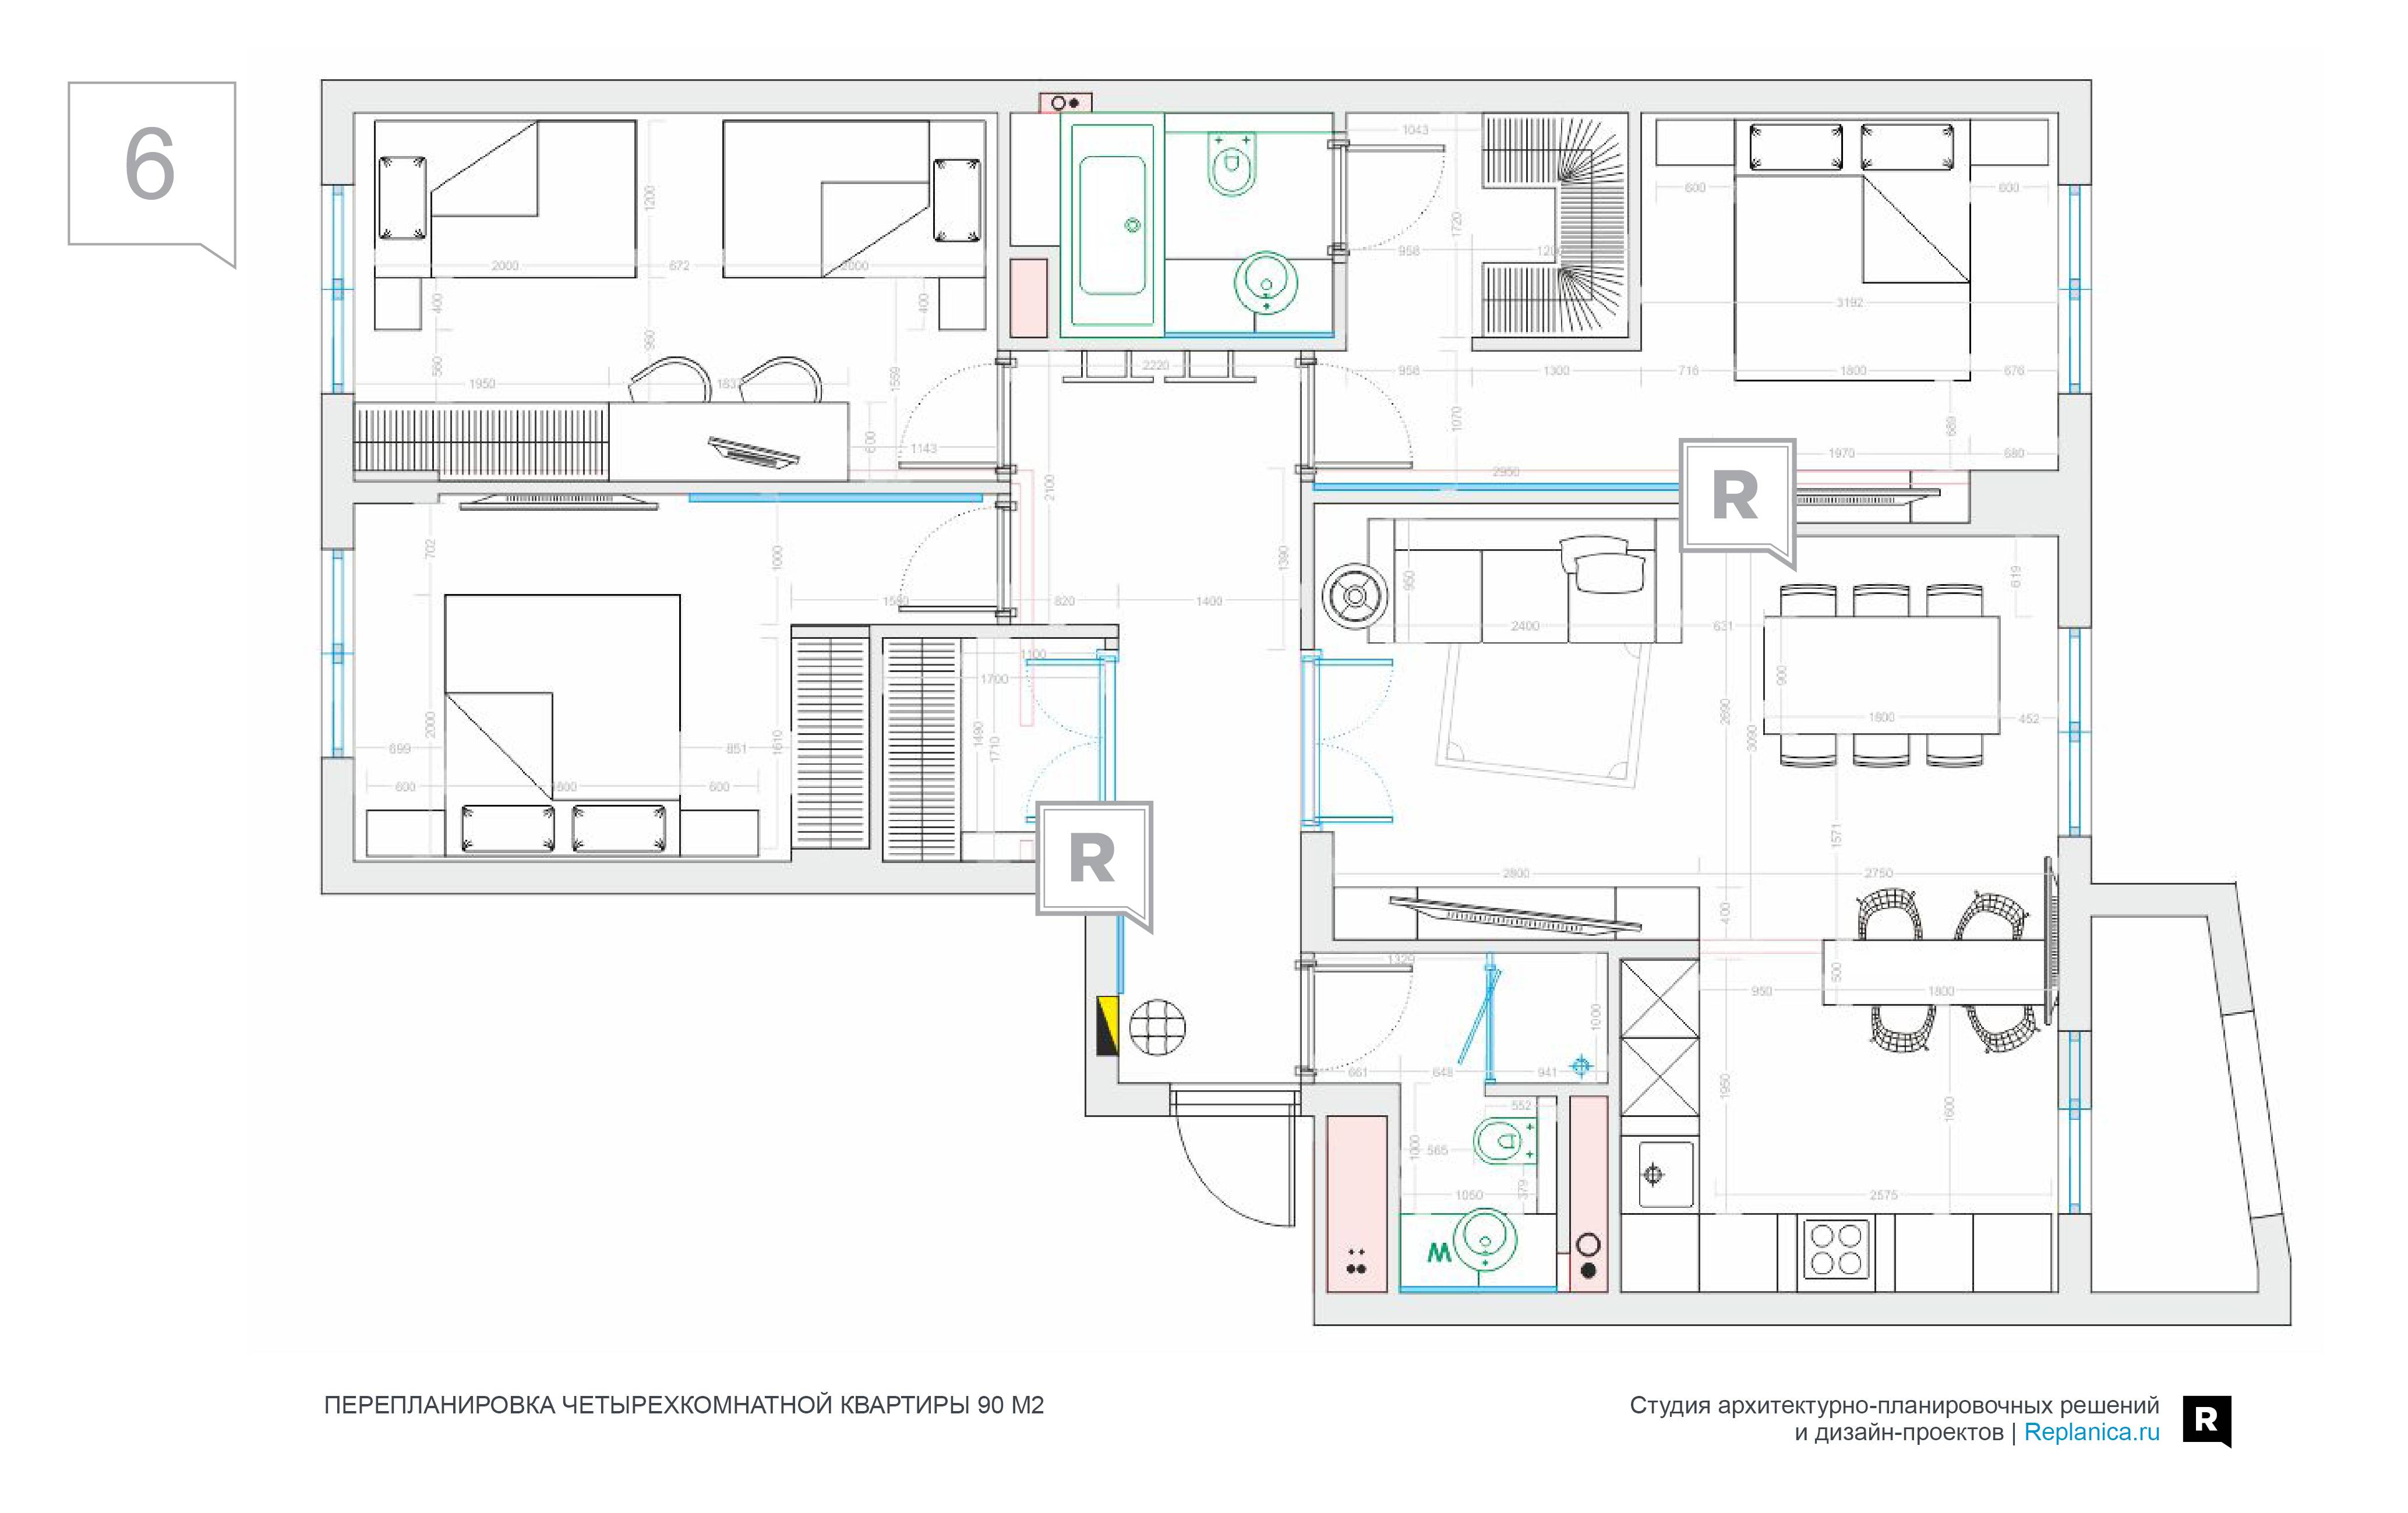 Перепланировка 4-х комнатной квартиры ленпроект